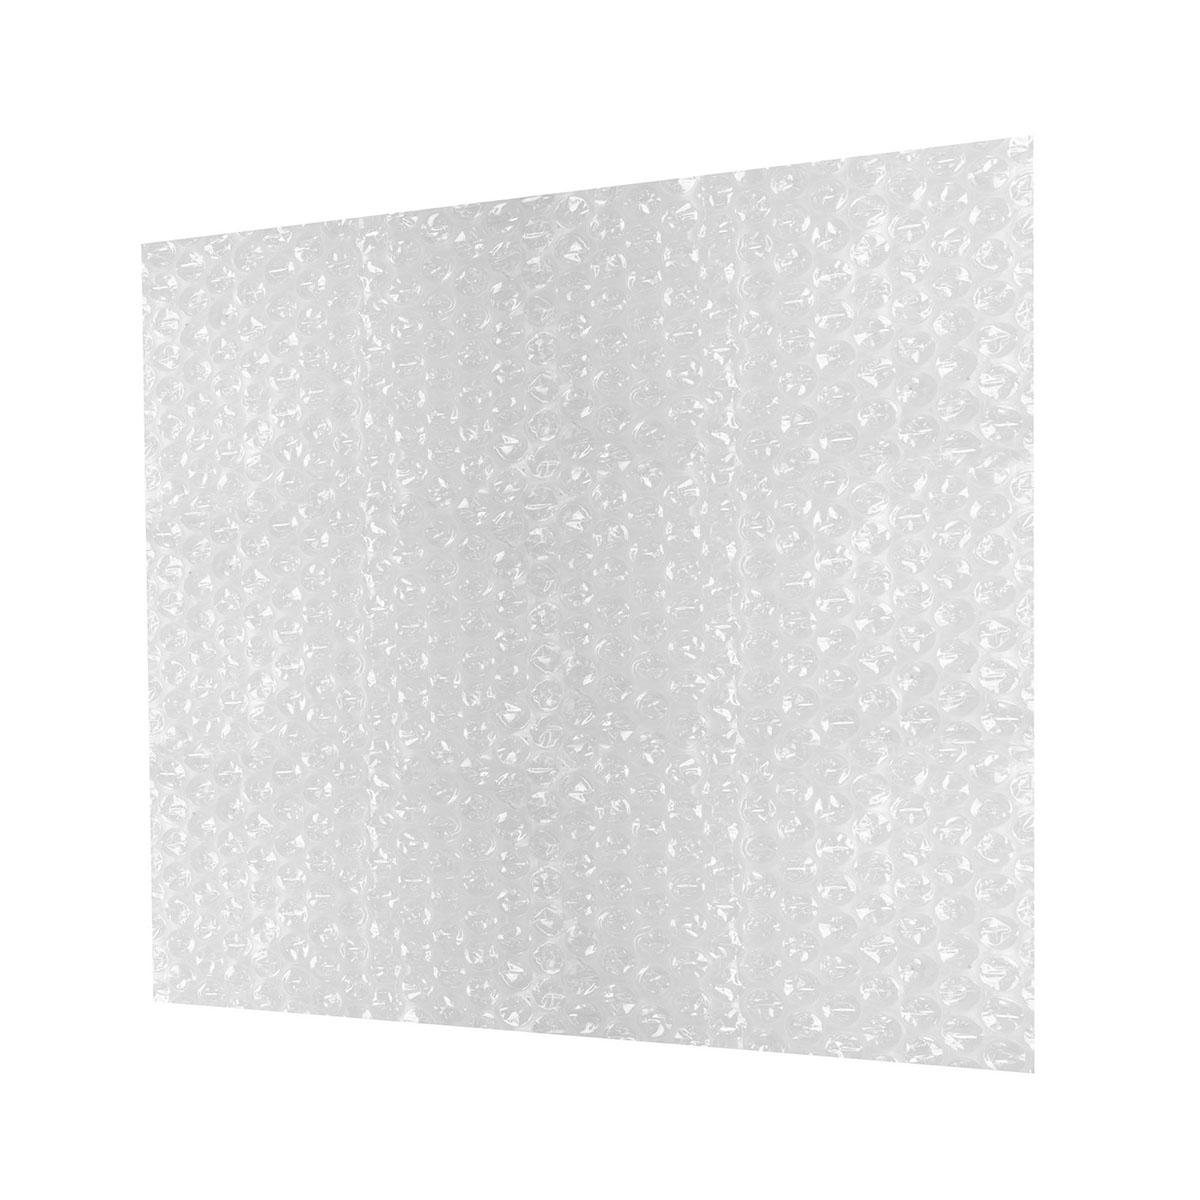 Plástico de burbujas 1 m x 80 m